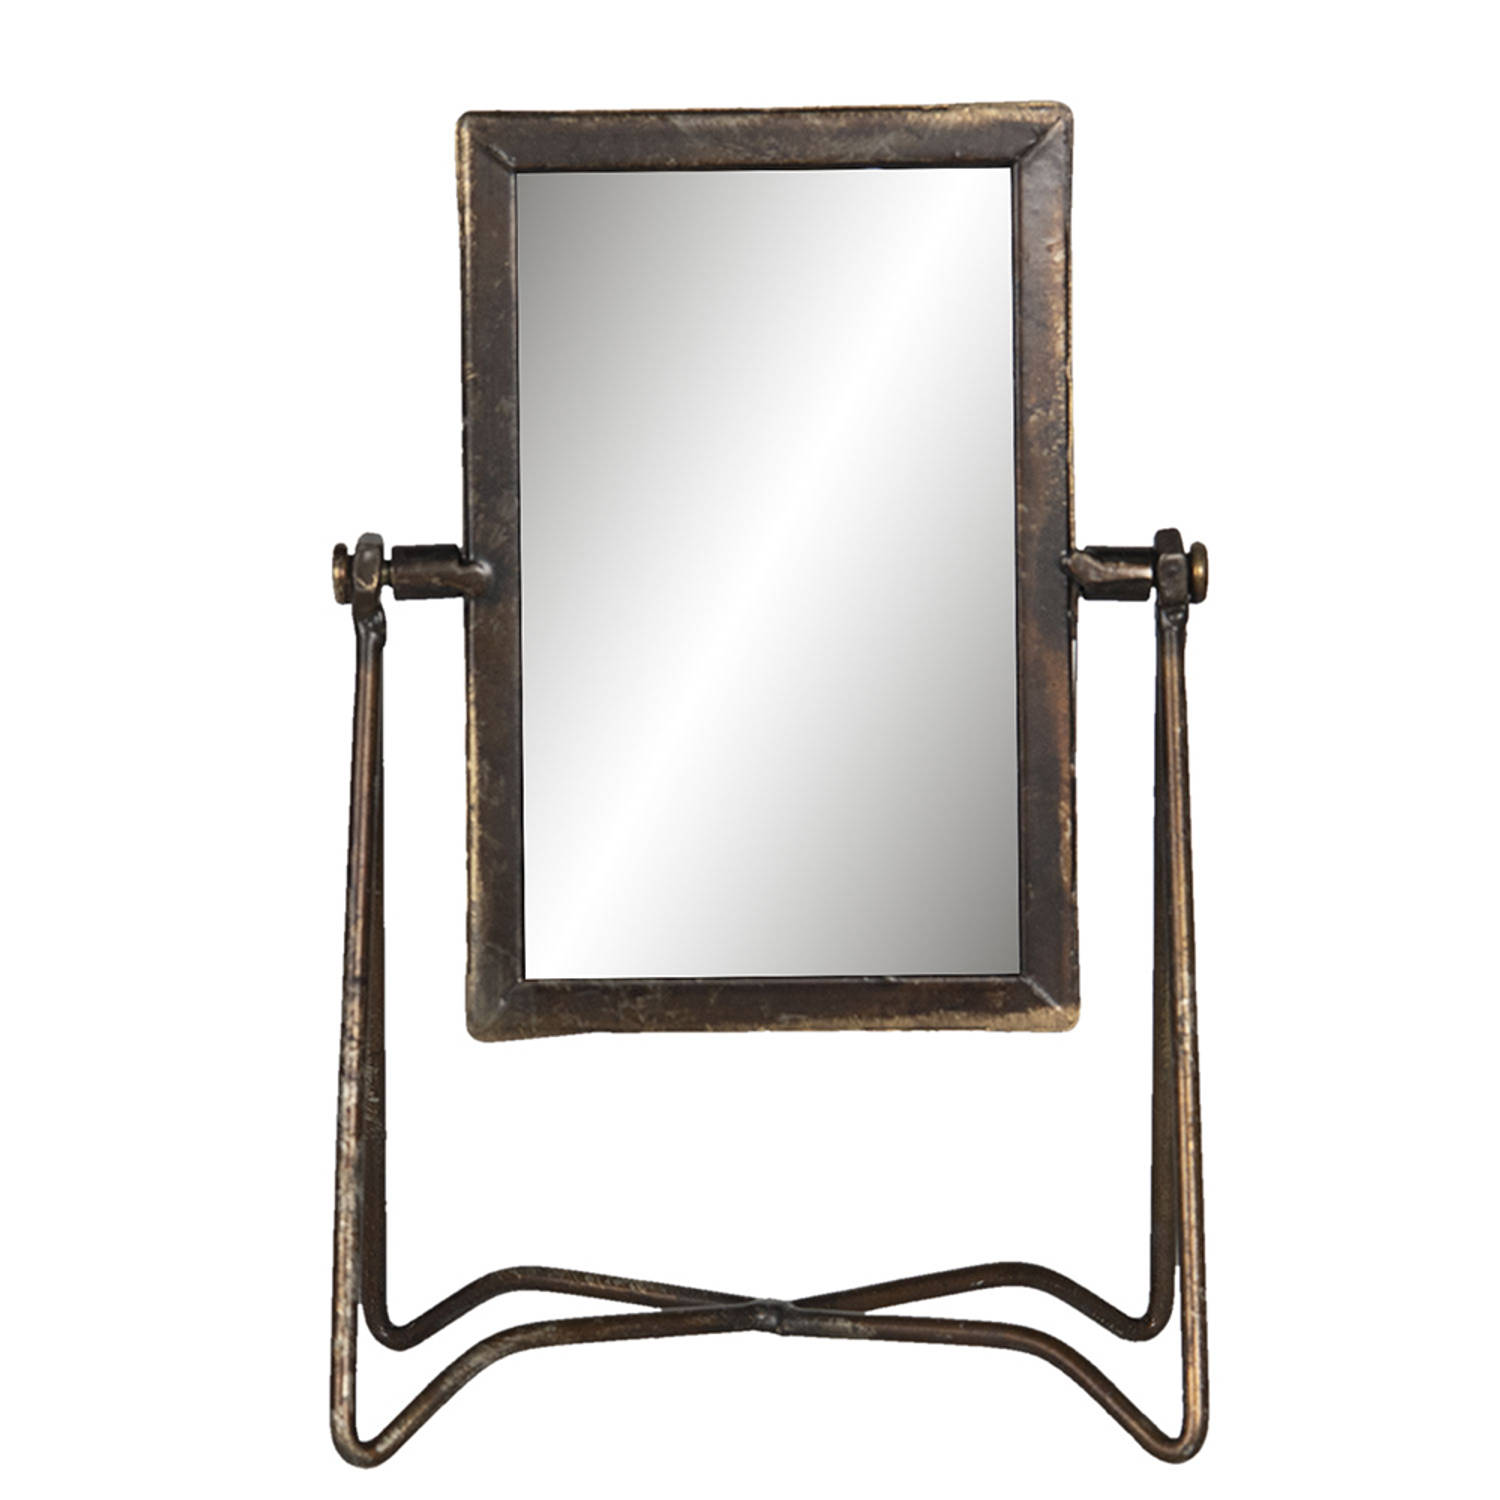 HAES DECO - Staande Spiegel Industrieel - Kleur Bruin - Formaat 15x10x22 cm - Materiaal Metaal / Glas - Tafel Spiegel, Rechthoekige Spiegel